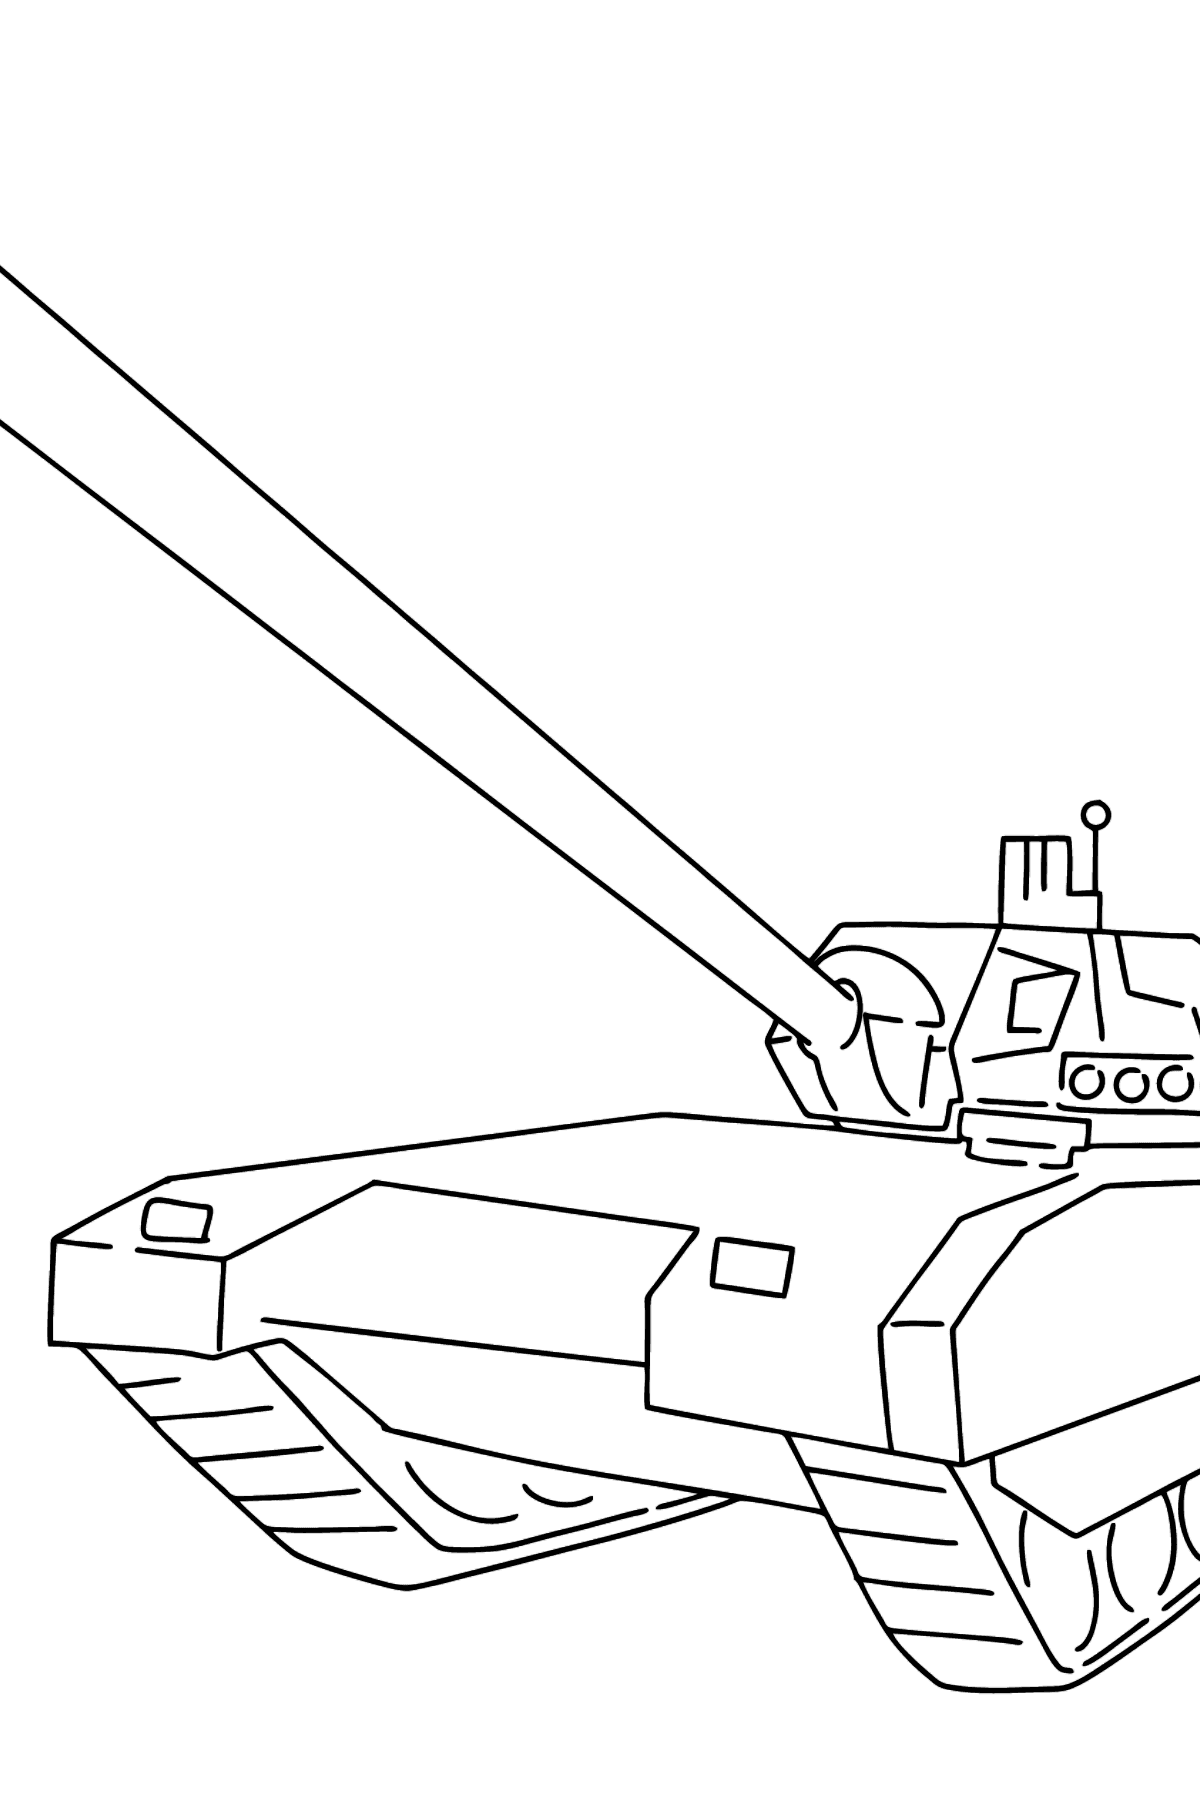 Dibujo de Tanque Armata para colorear - Dibujos para Colorear para Niños